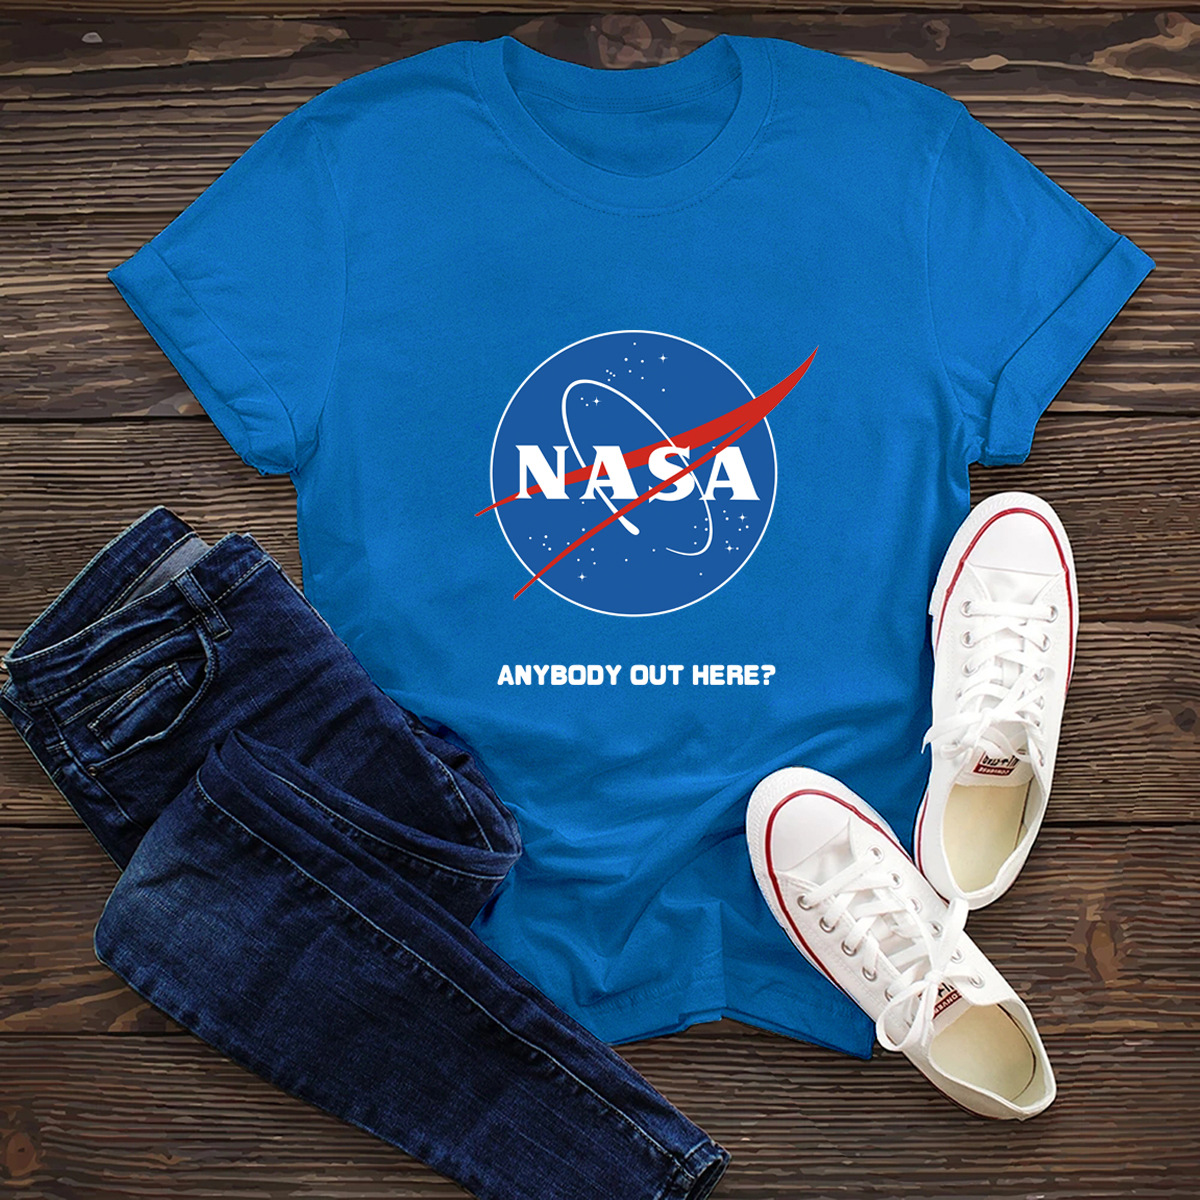 Comfortable Short-Sleeved Tops T-Shirt Nasa Space NSSN1453